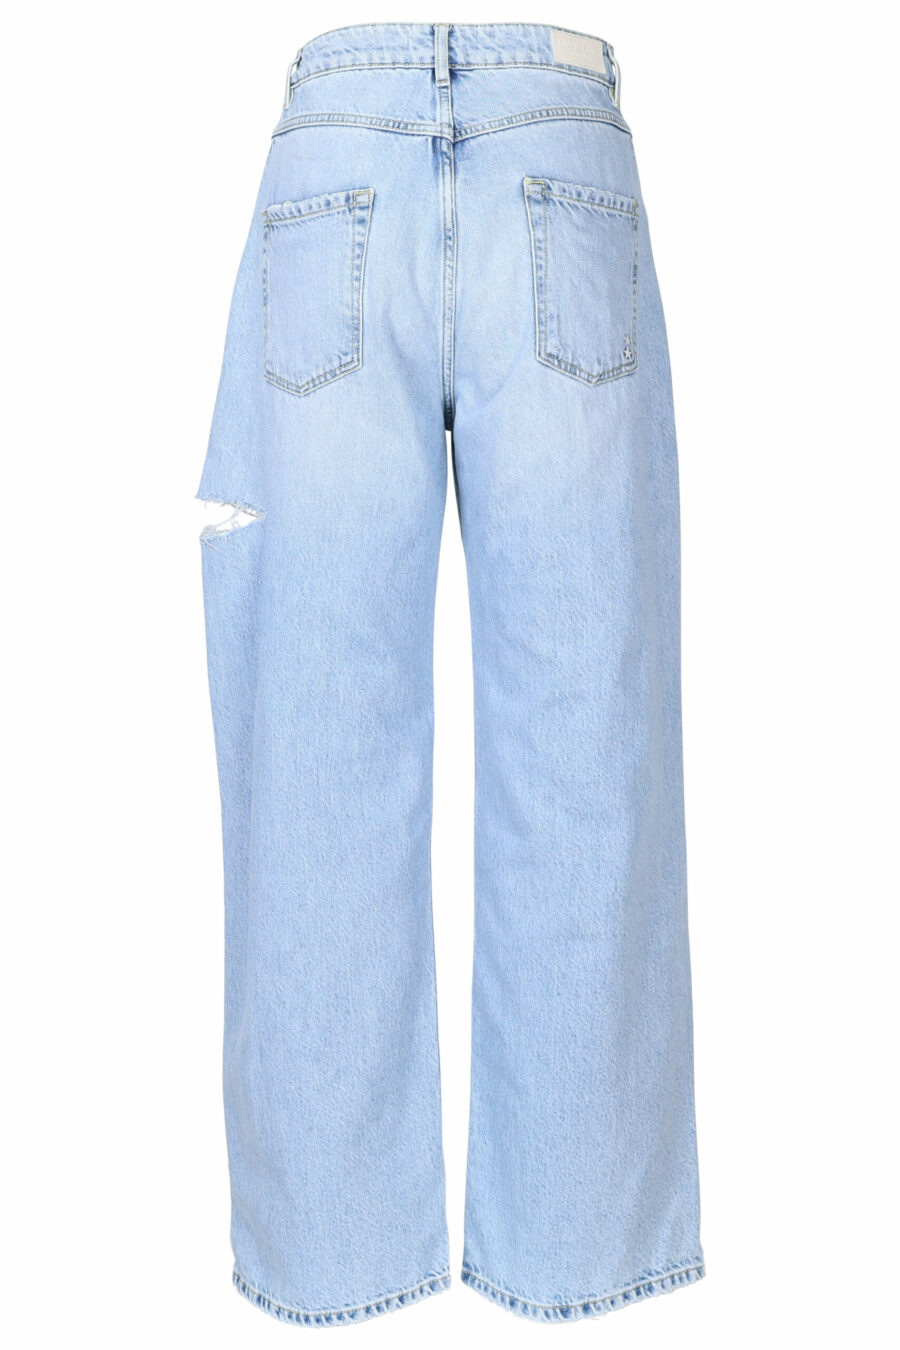 Blaue "poppy" Jeans mit Rissen - 8052691167298 2 skaliert